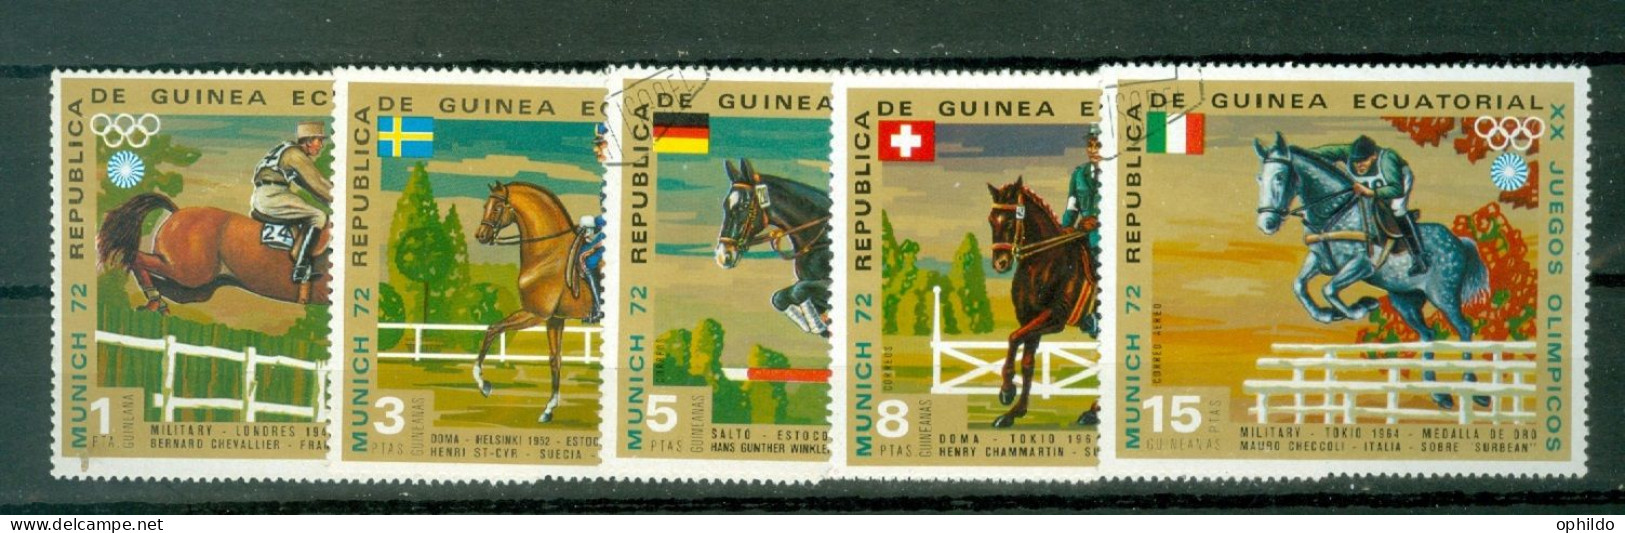 Guinée Equatoriale   5 Valeurs Obli  TB   Equitation   - Chevaux